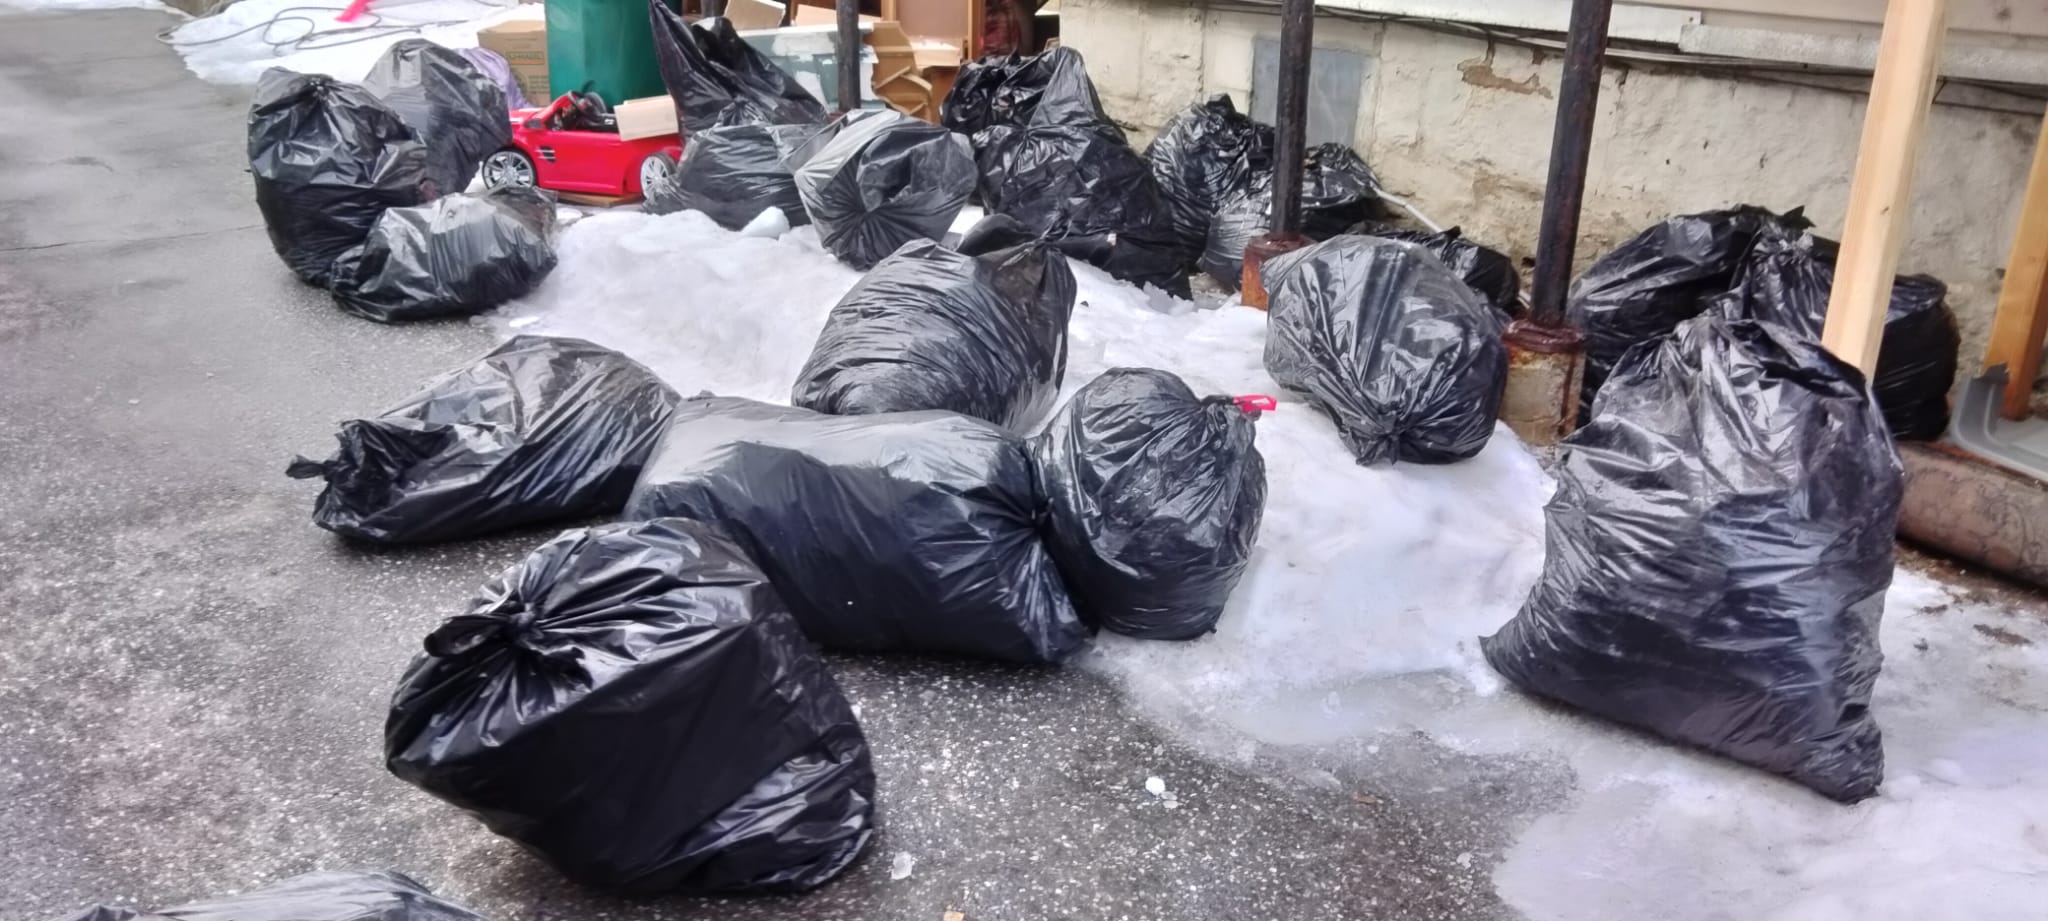 Bags of trash in snowy street